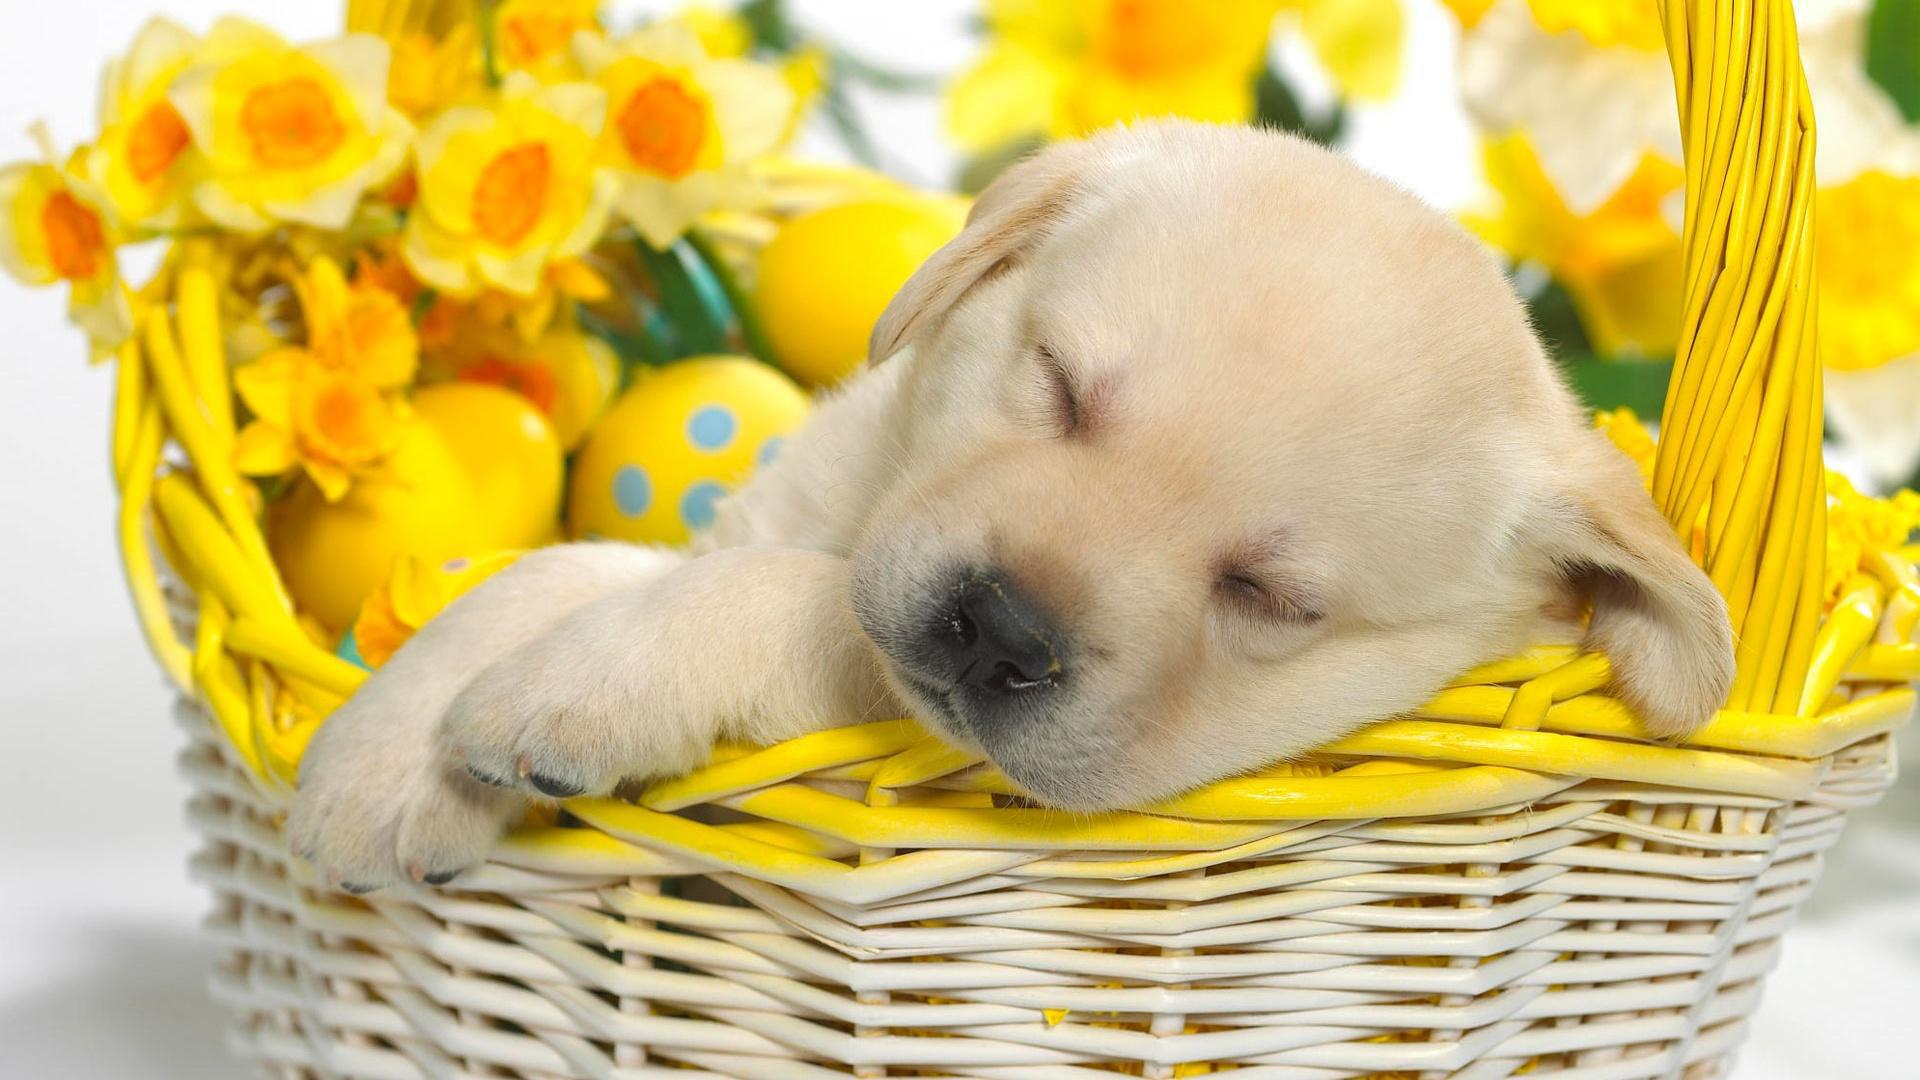 Spring Puppy HD desktop wallpaper, Widescreen, High Definition